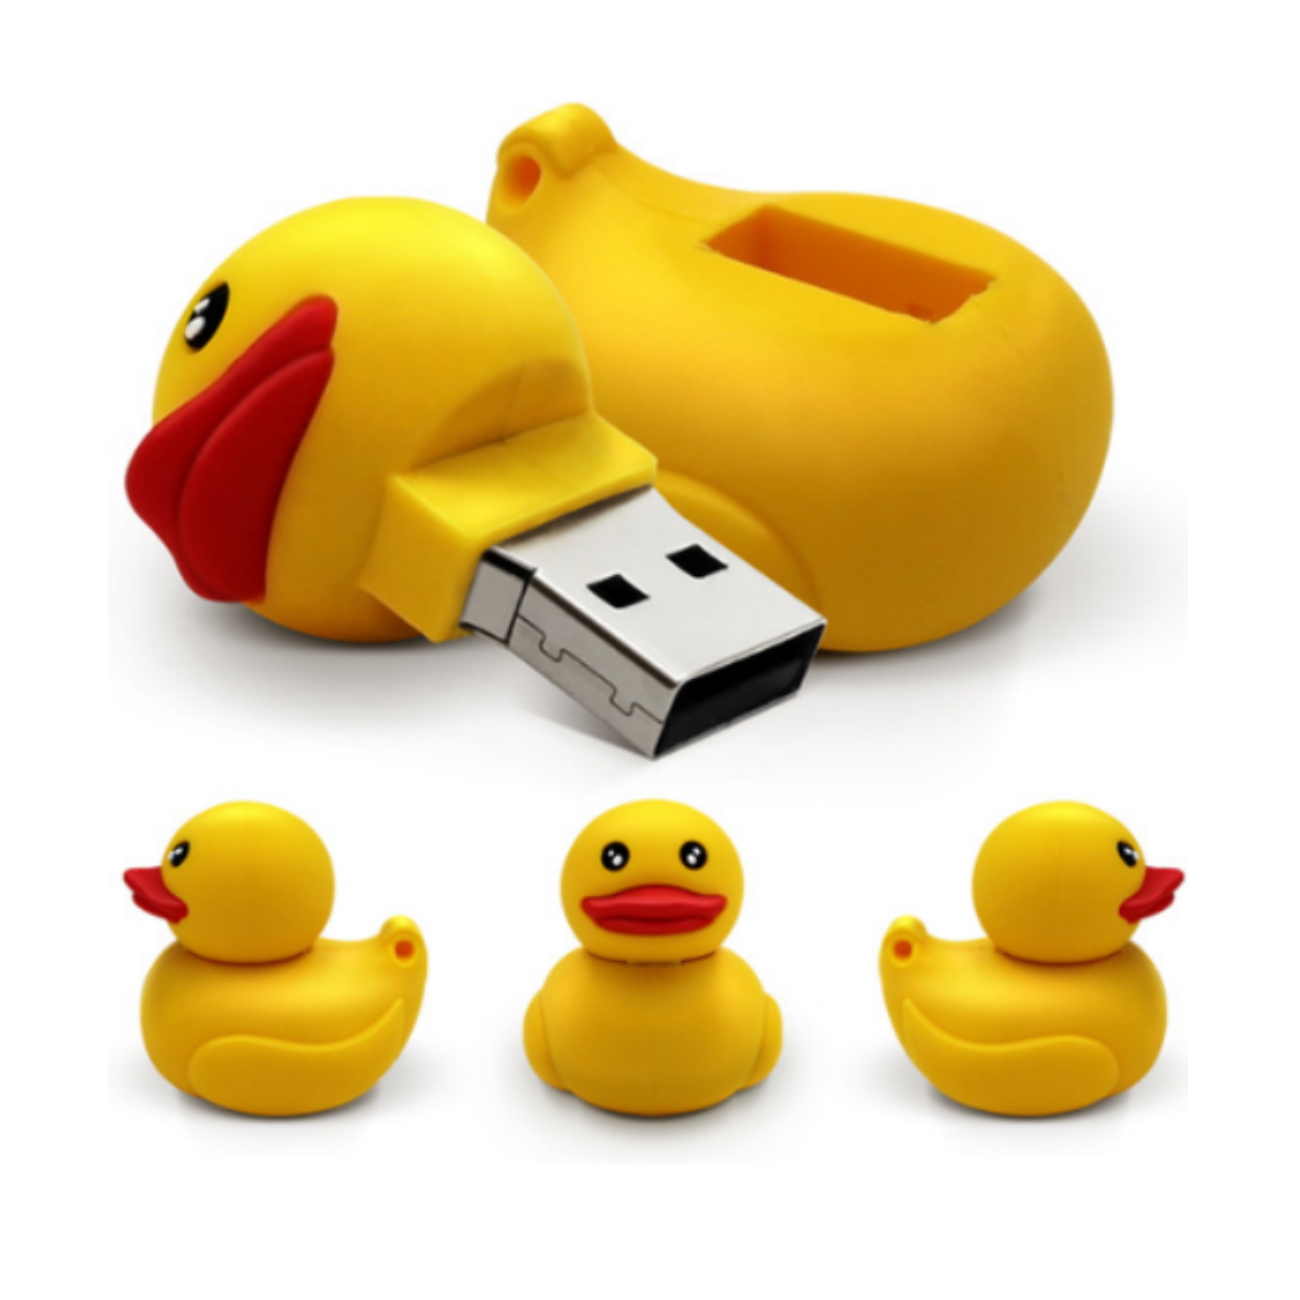 GERMANY 16 Ente (Gelb, GB) USB-Stick USB